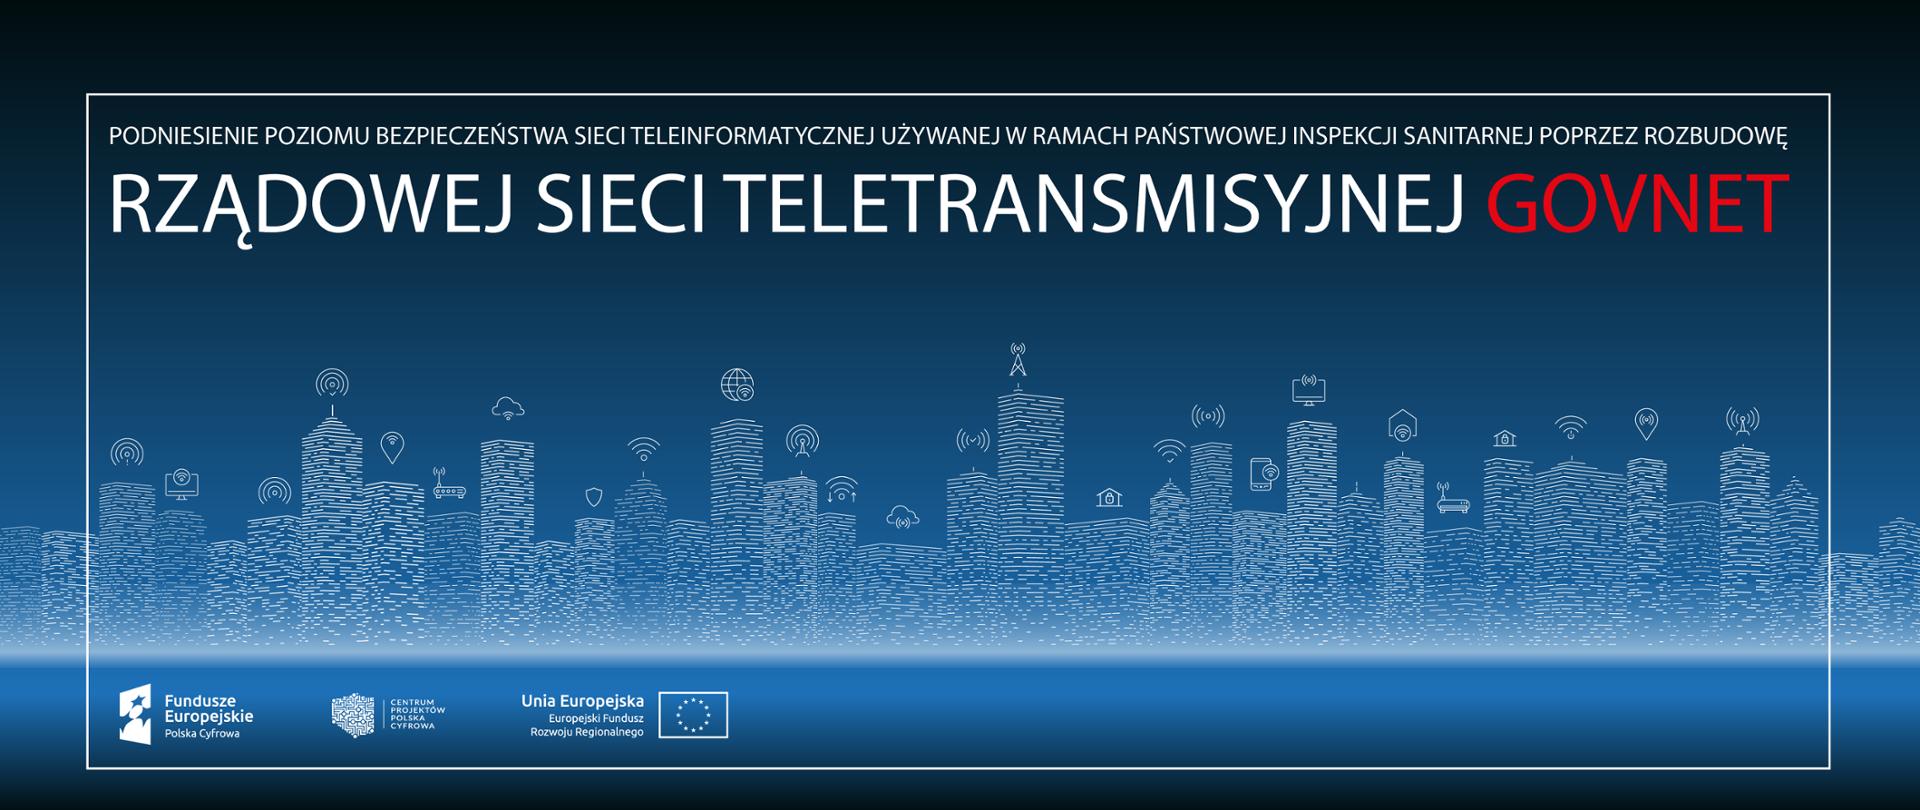 Podniesienie poziomu bezpieczeństwa sieci teleinformatycznej używanej w ramach państwowej inspekcji sanitarnej poprzez rozbudowę rządowej sieci teletransmisyjnej GOVNET